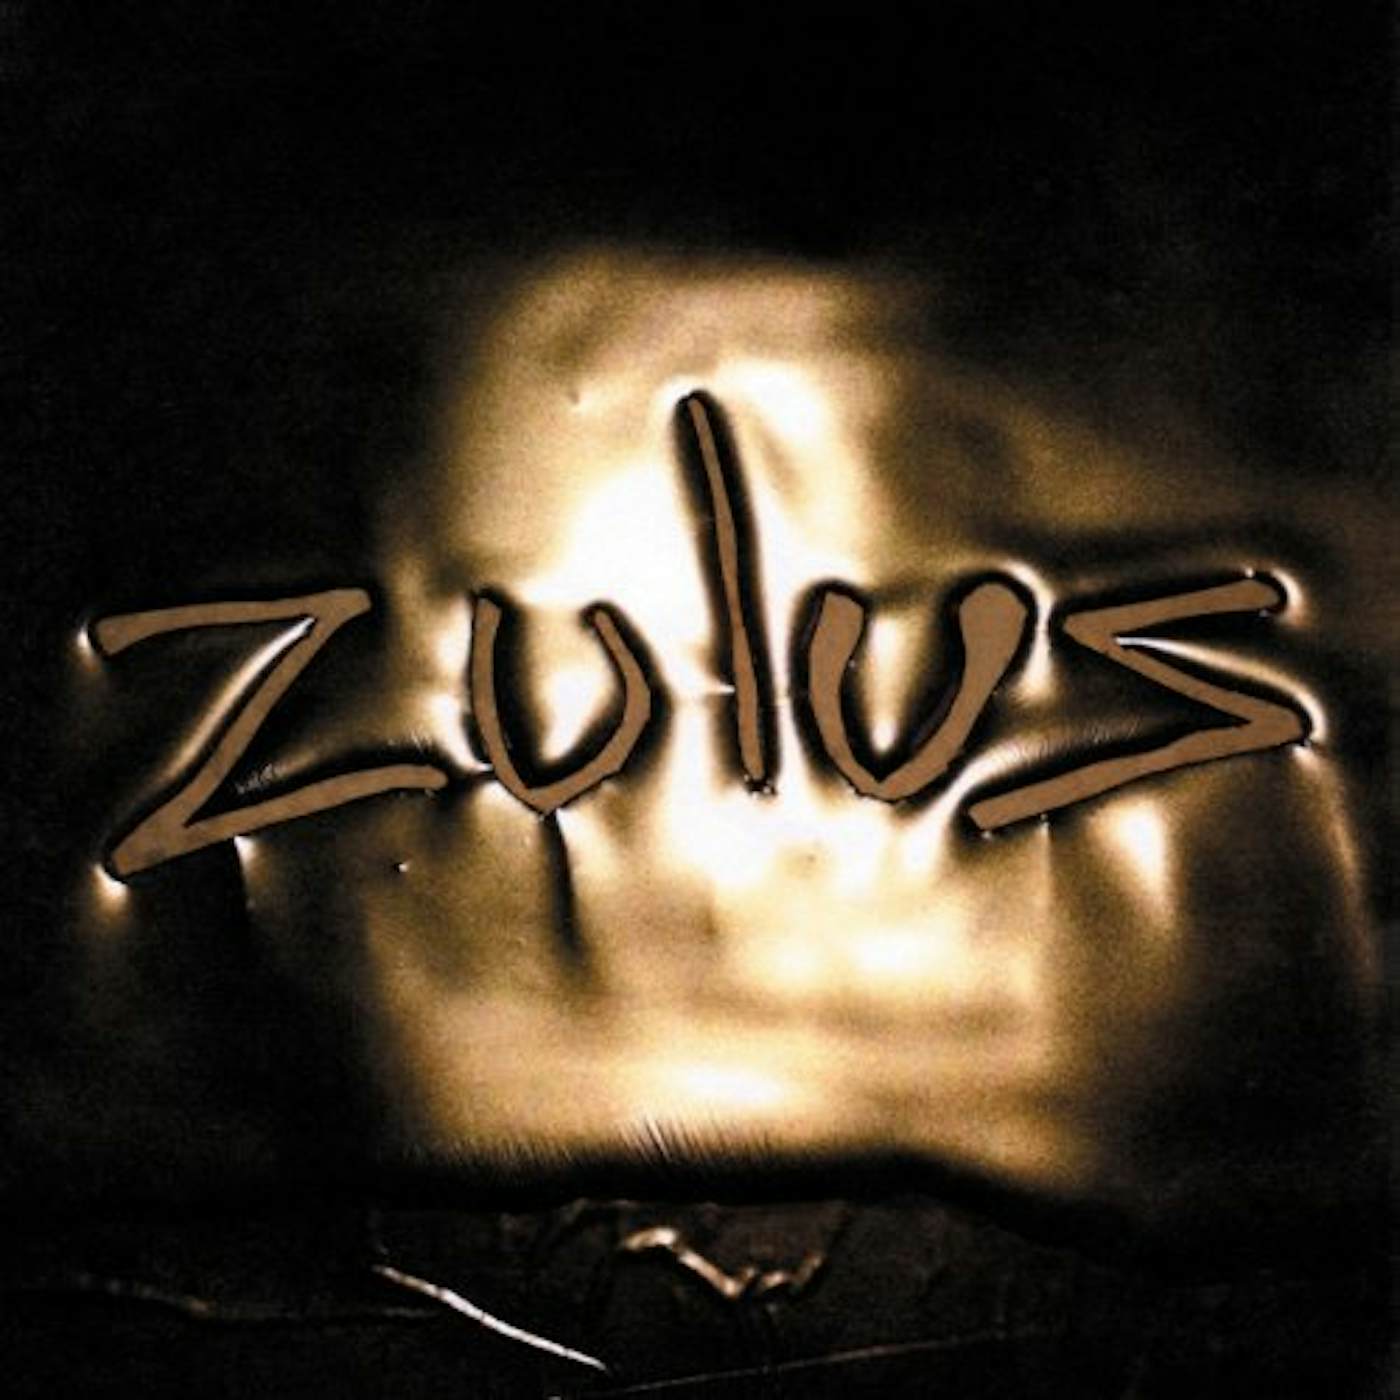 Zulus Vinyl Record